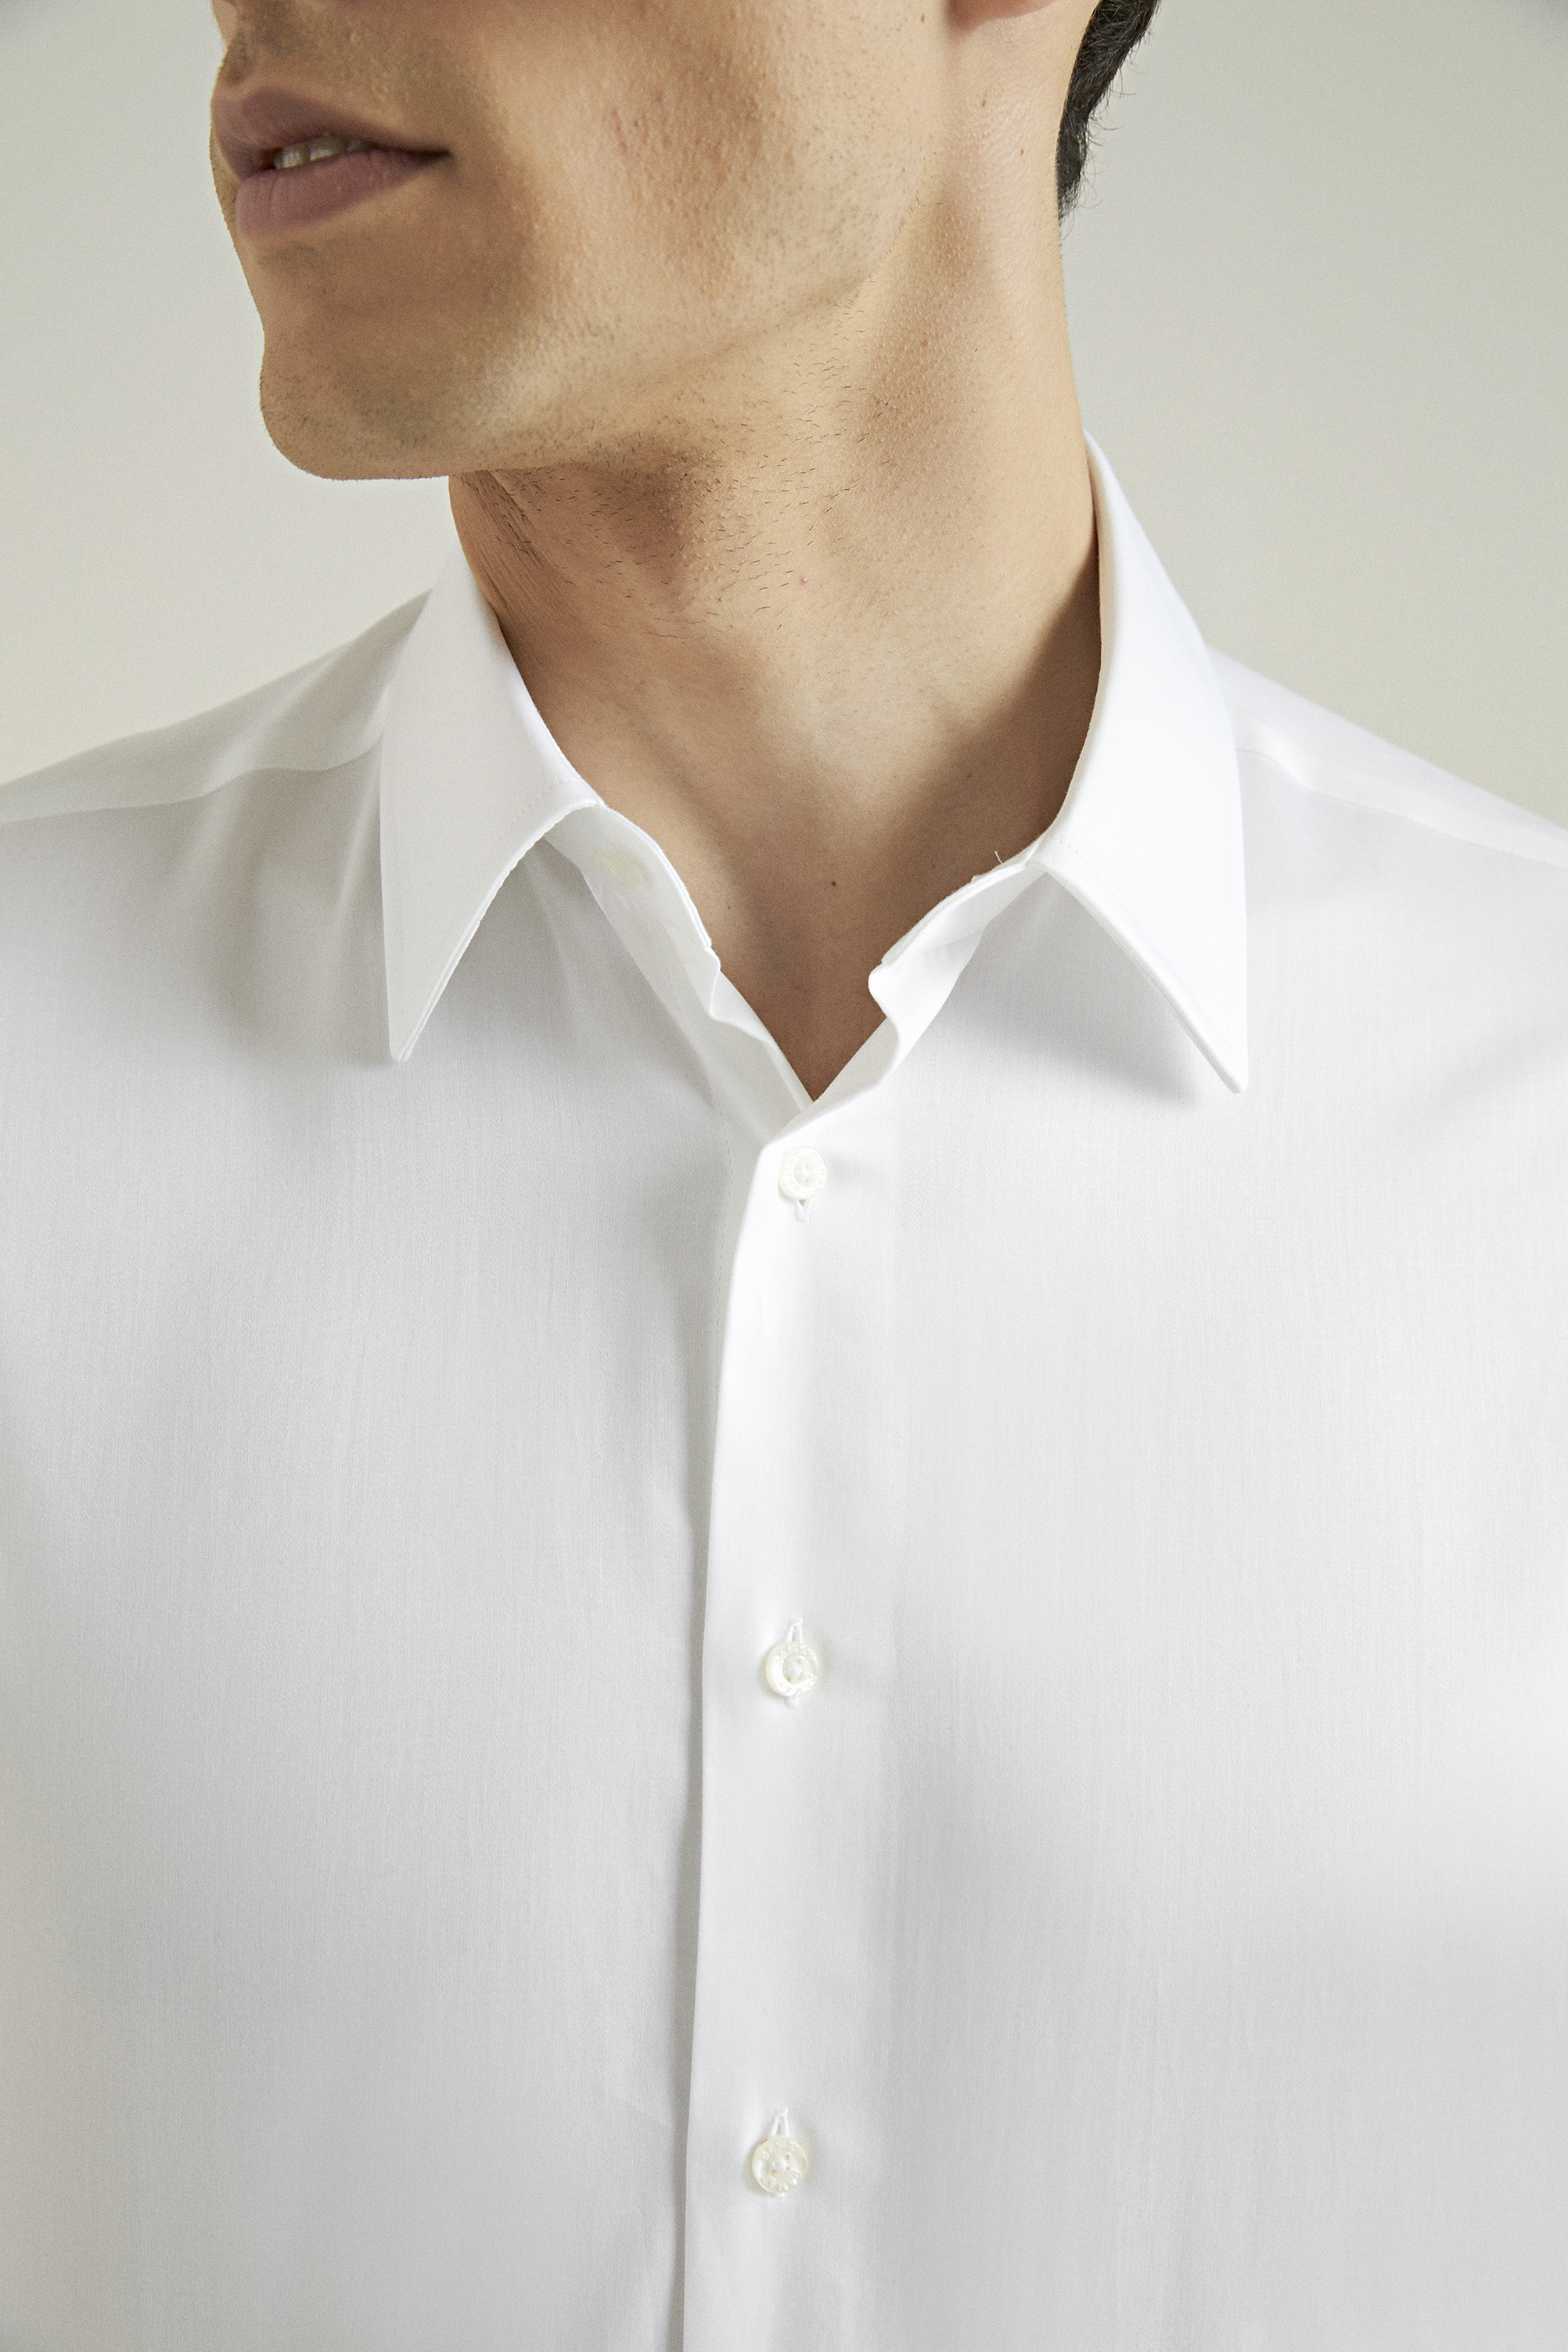 Damat Tween Damat Comfort Beyaz Düz Gömlek. 3